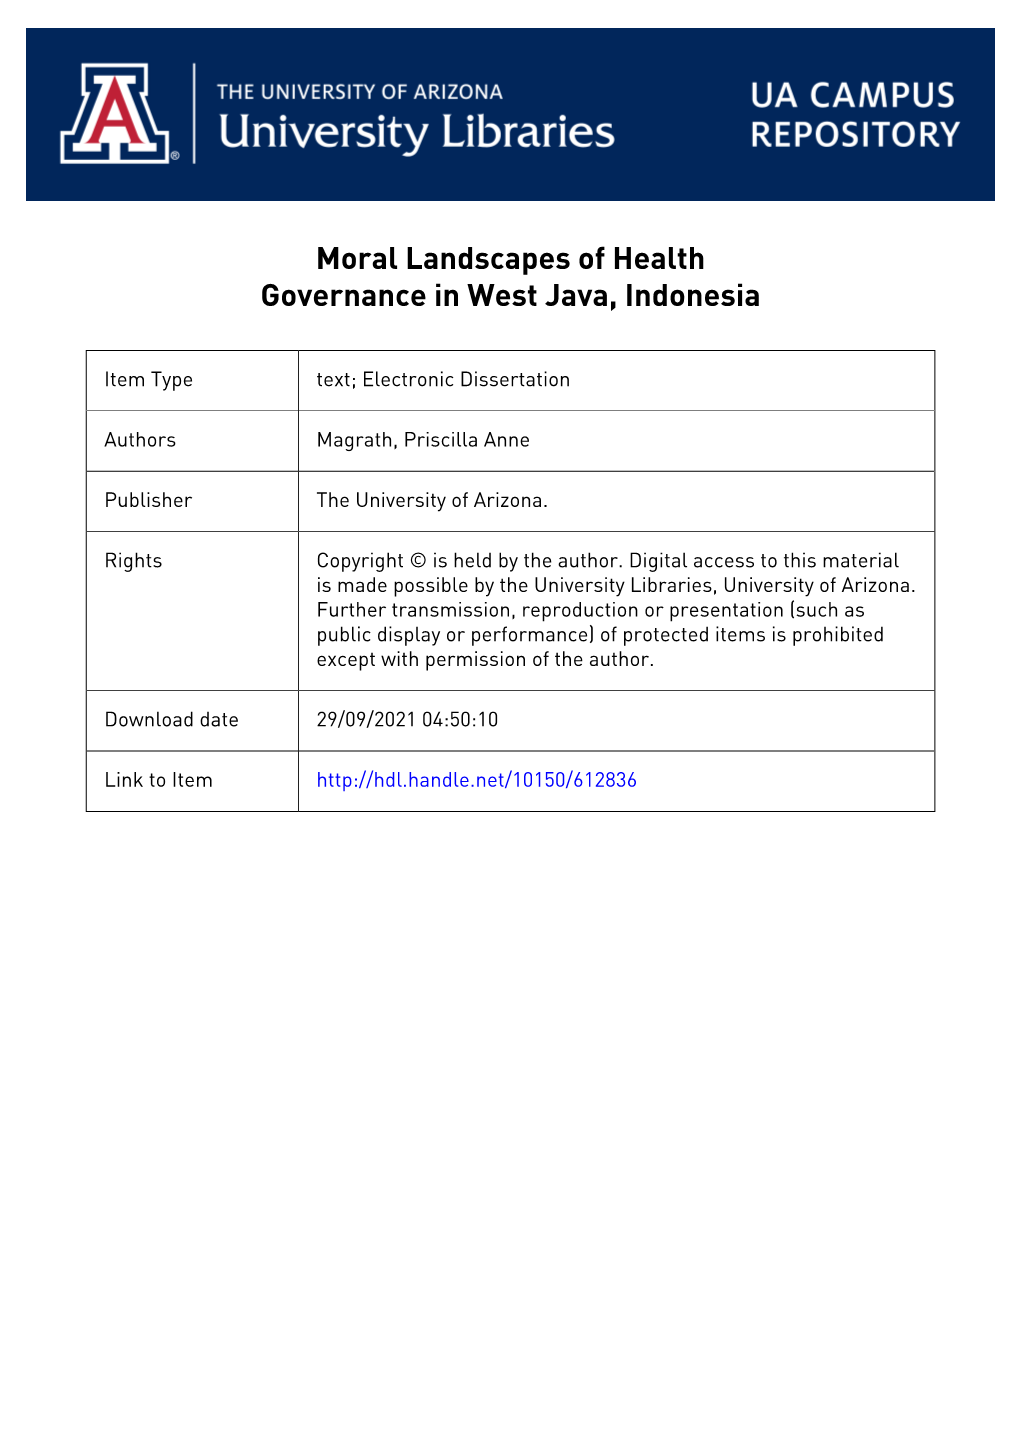 Moral Landscapes of Health Governance in West Java, Indonesia